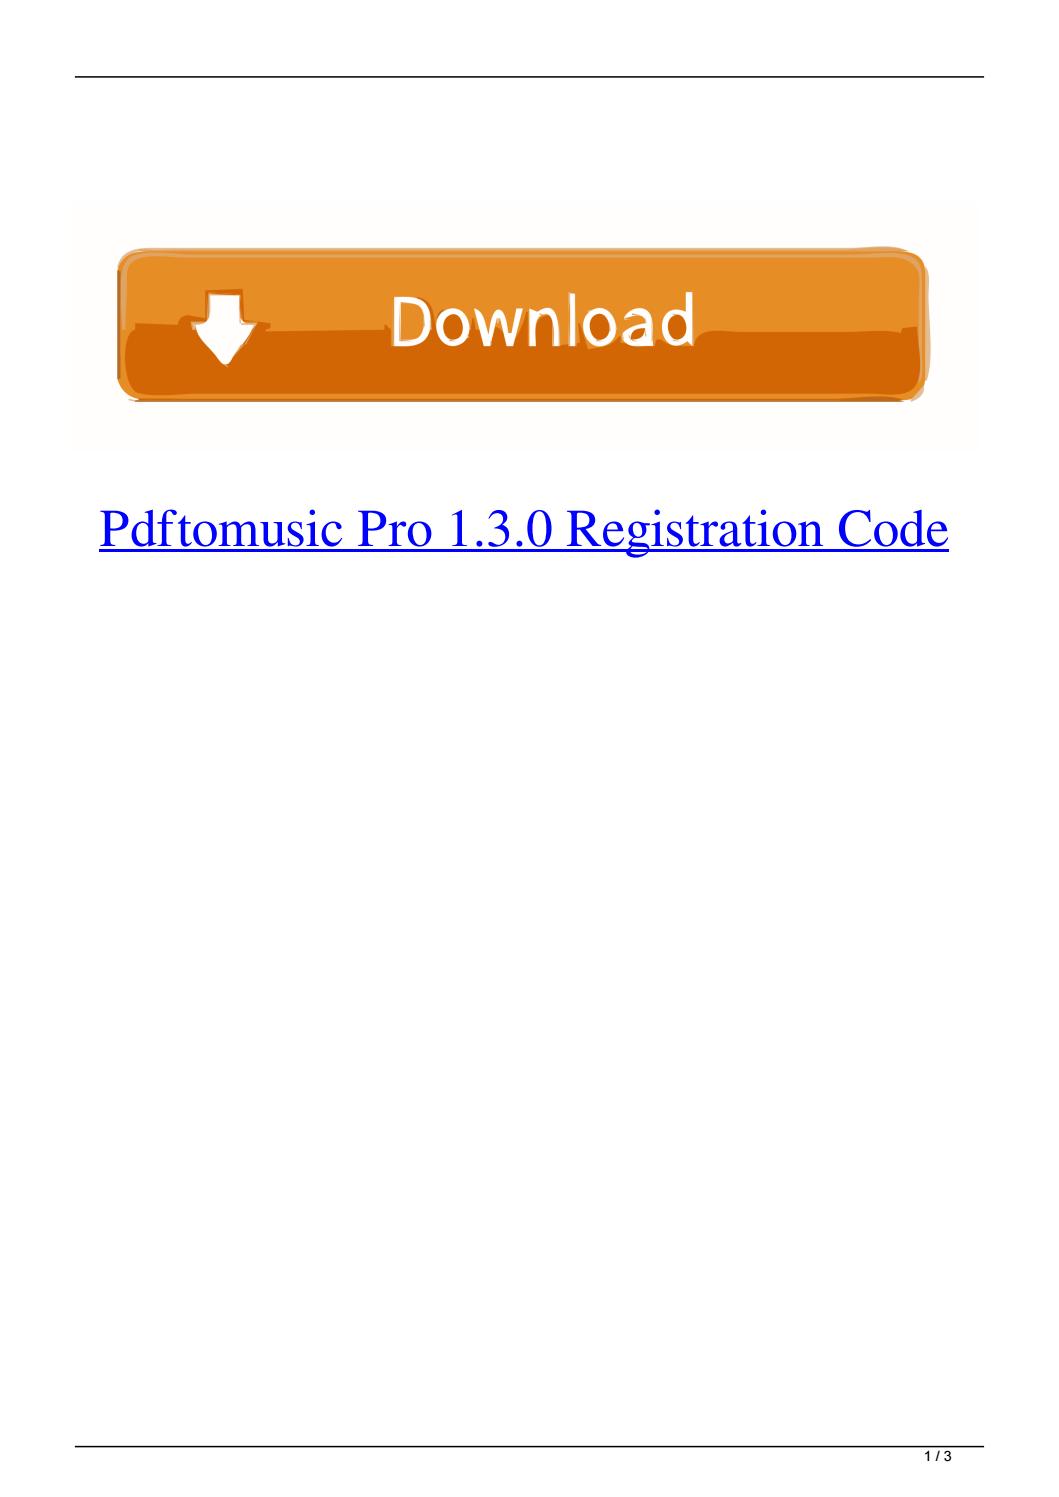 pdftomusic pro 1.6.5 registration code